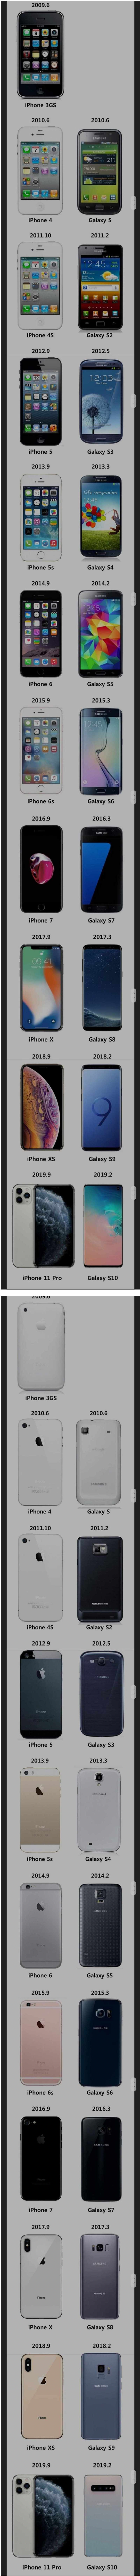 아이폰 vs 갤럭시 1세대부터 디자인 비교